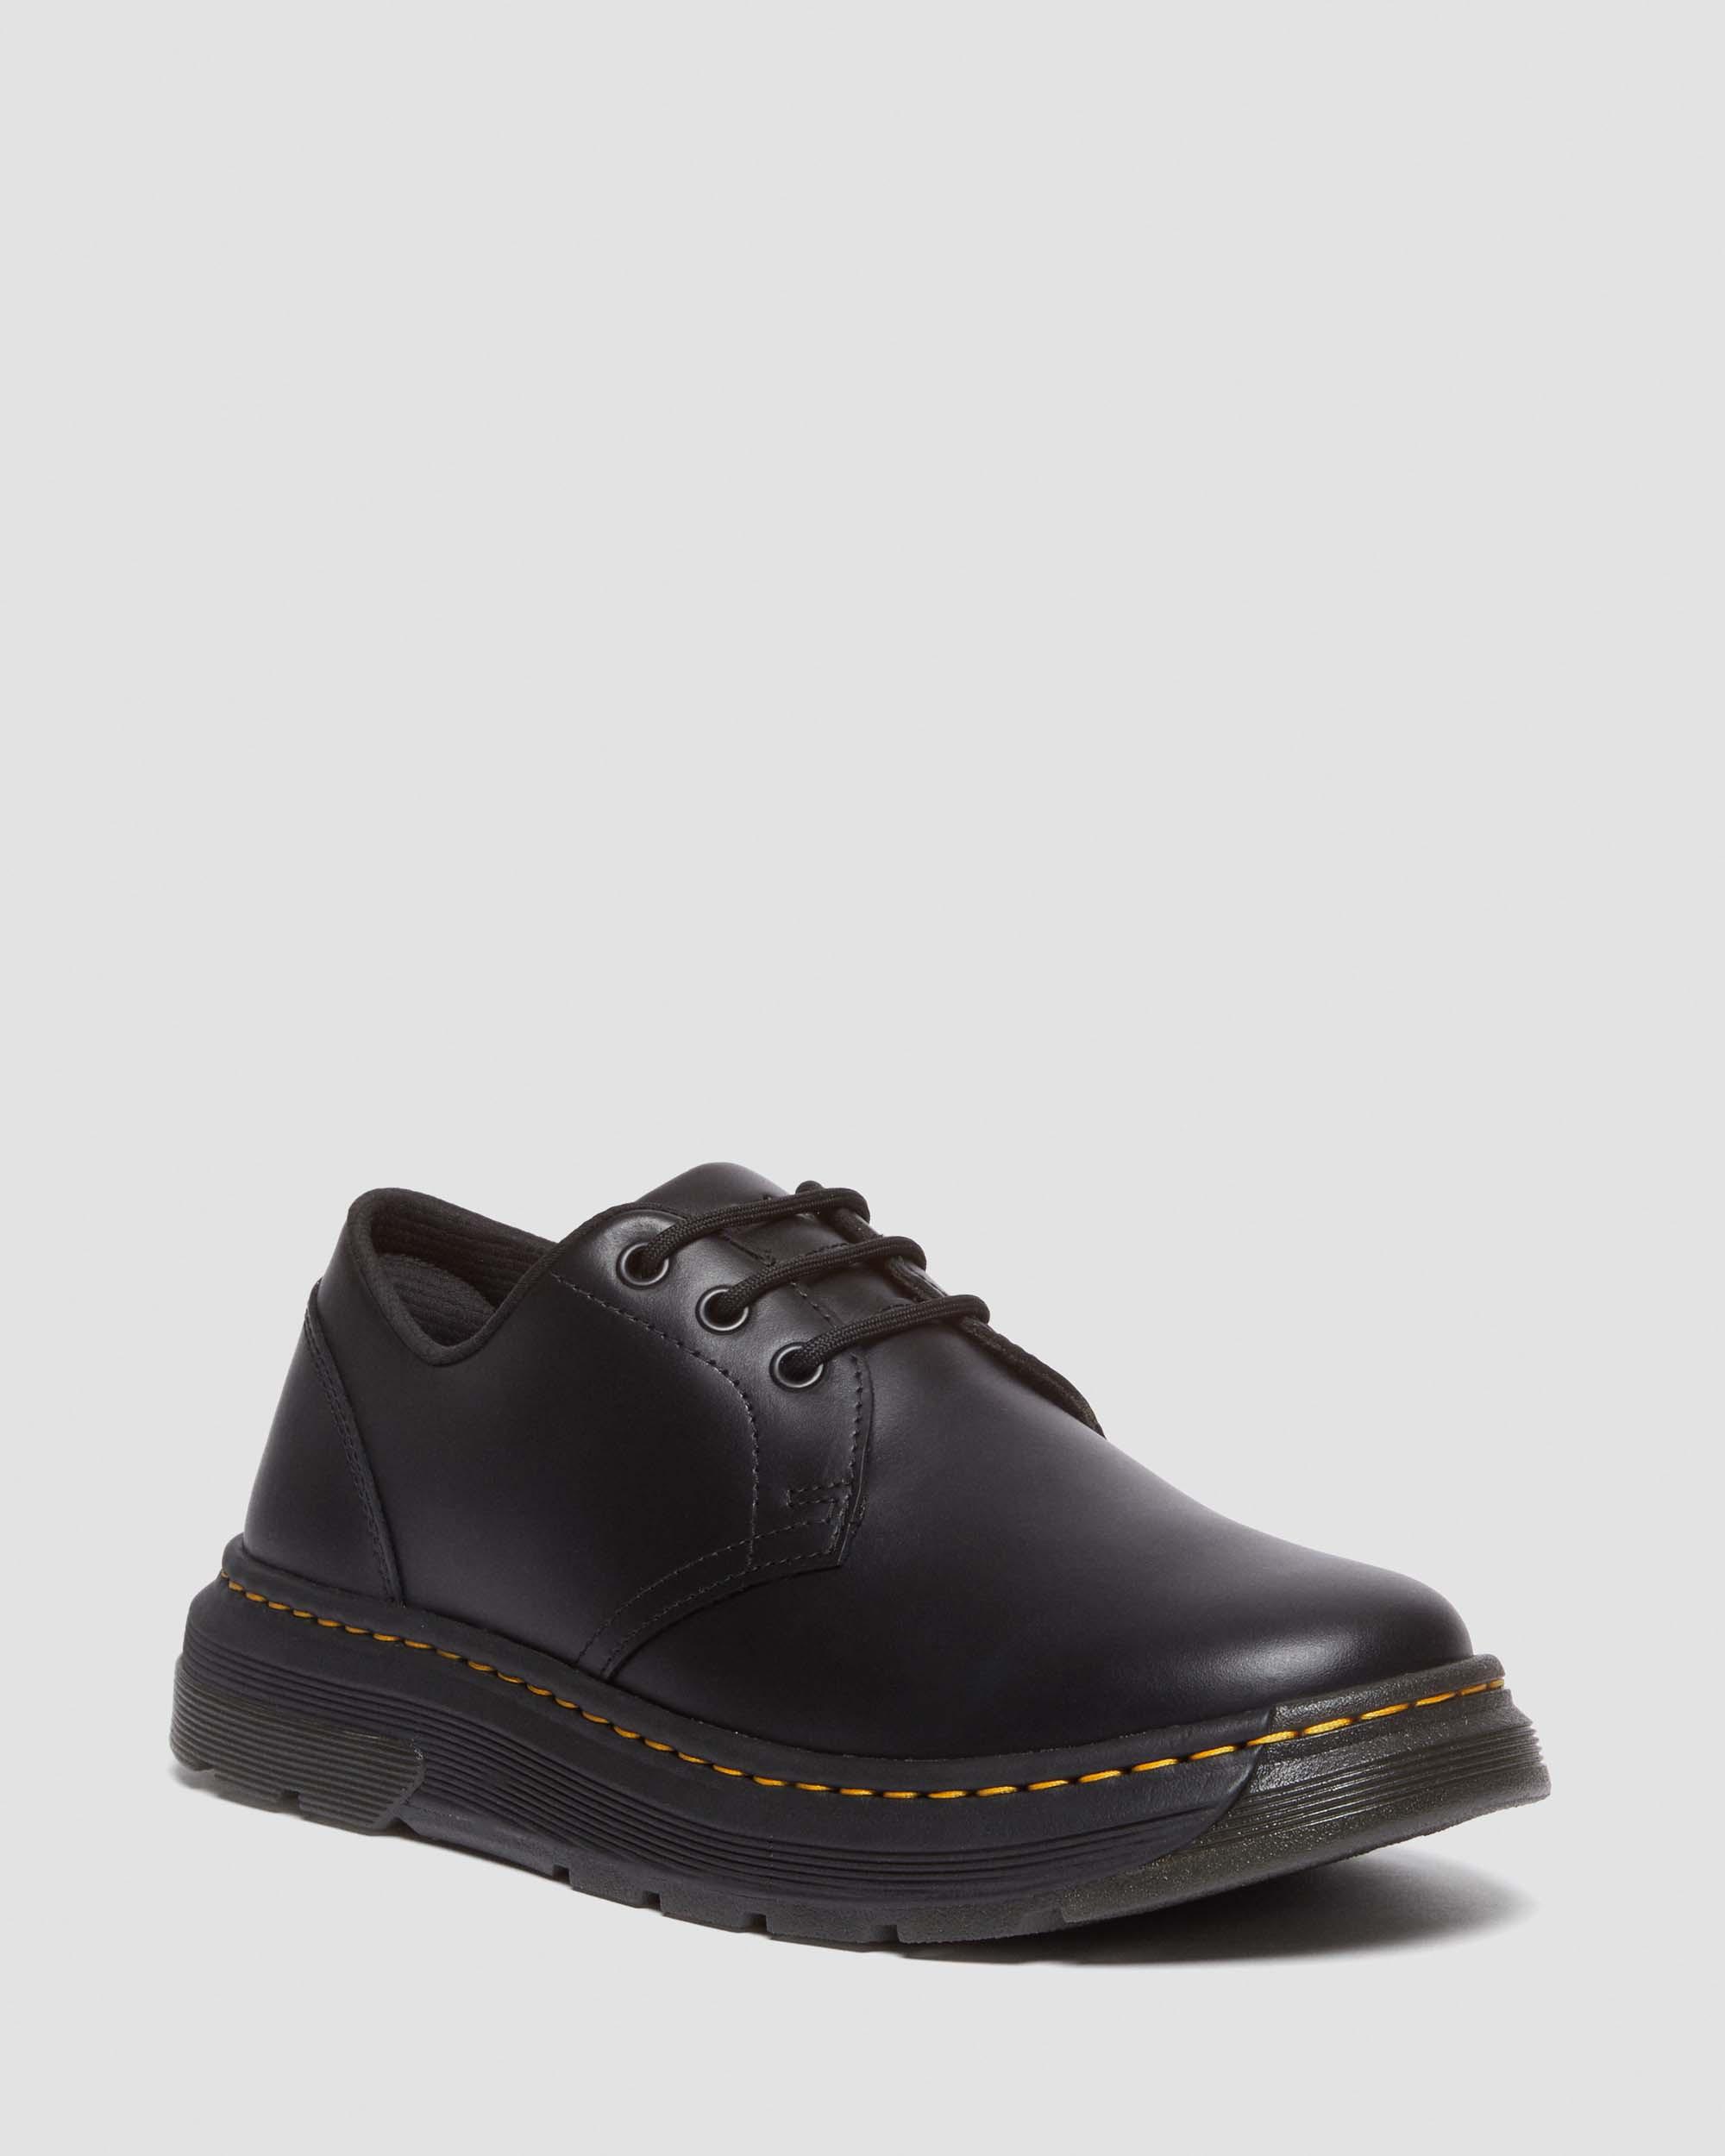 Crewson Lo-skor i svart läder